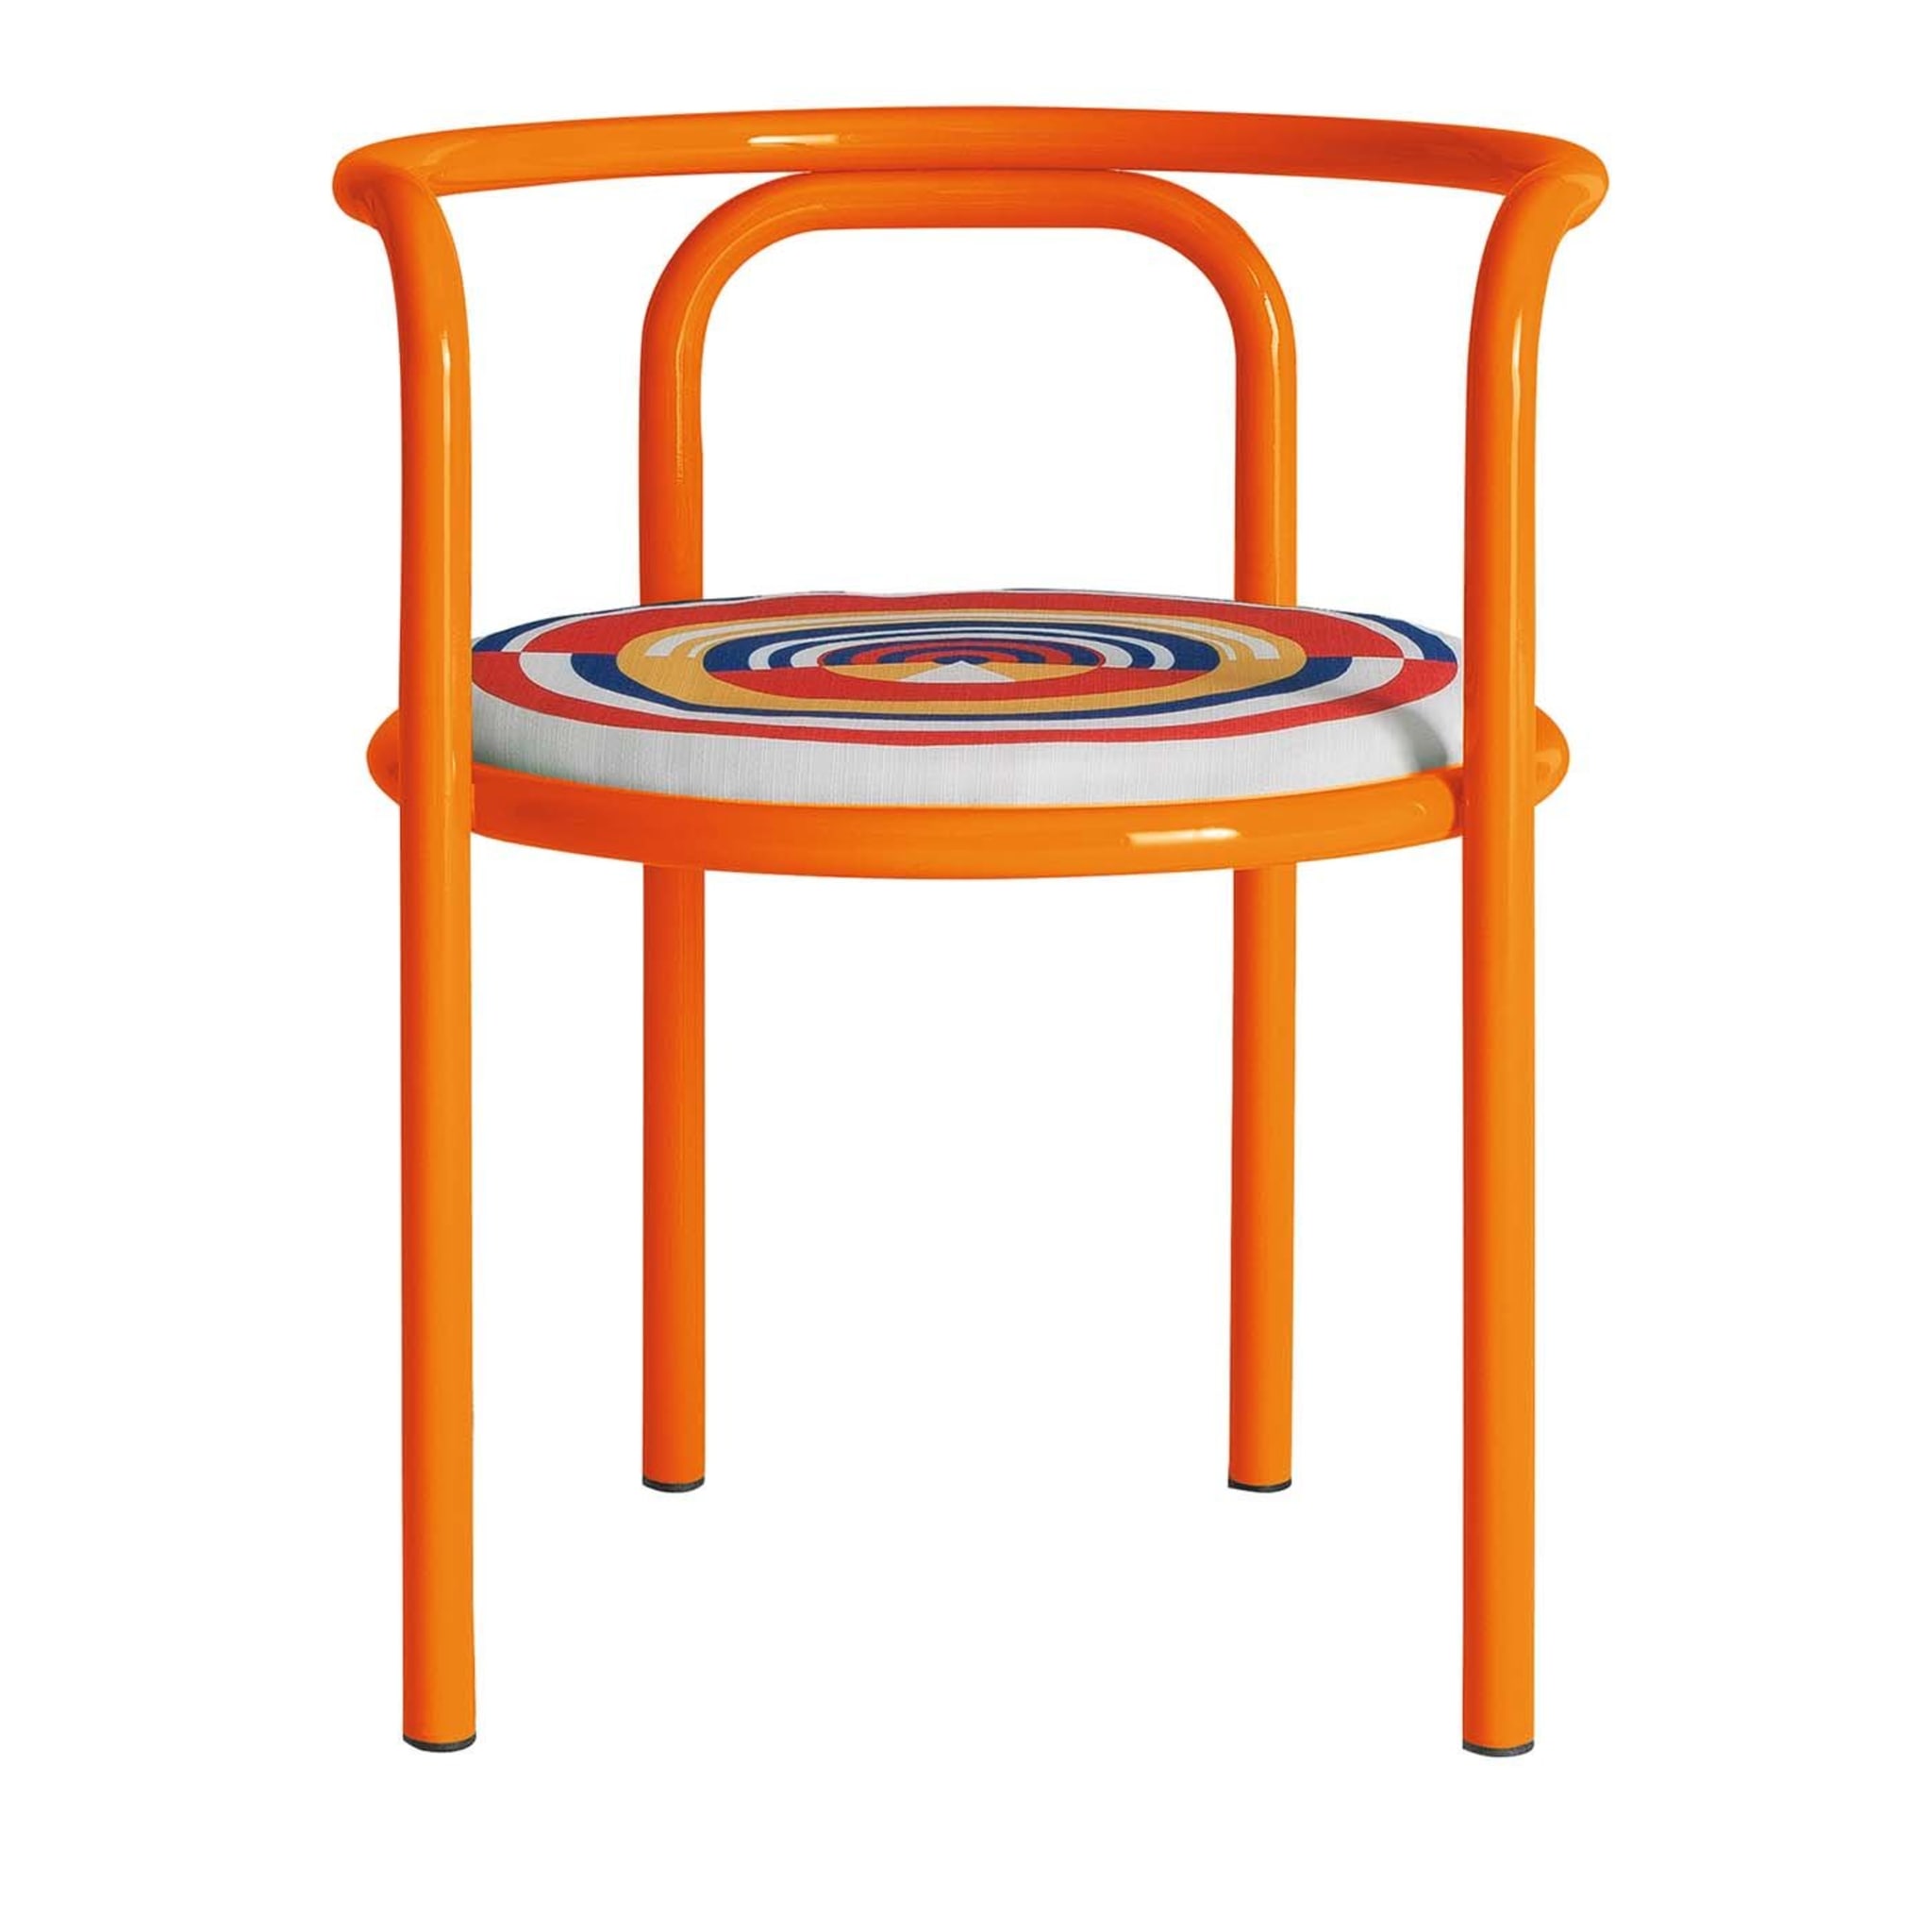 Locus Solus Orange Chair by Gae Aulenti - Main view